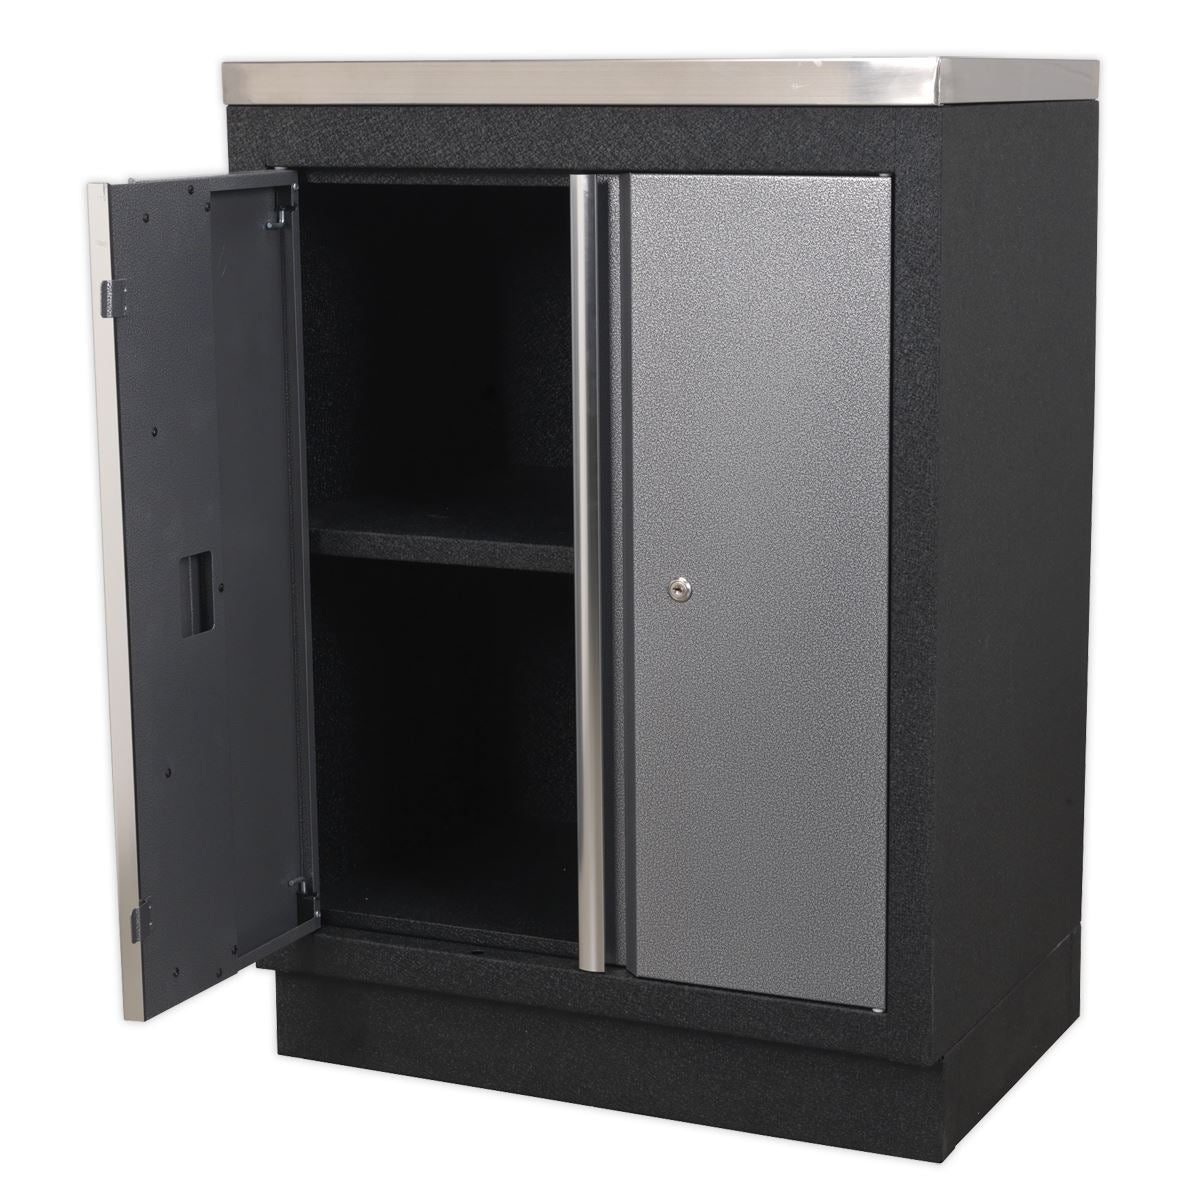 Sealey Superline Pro Modular 2 Door Floor Cabinet 680mm